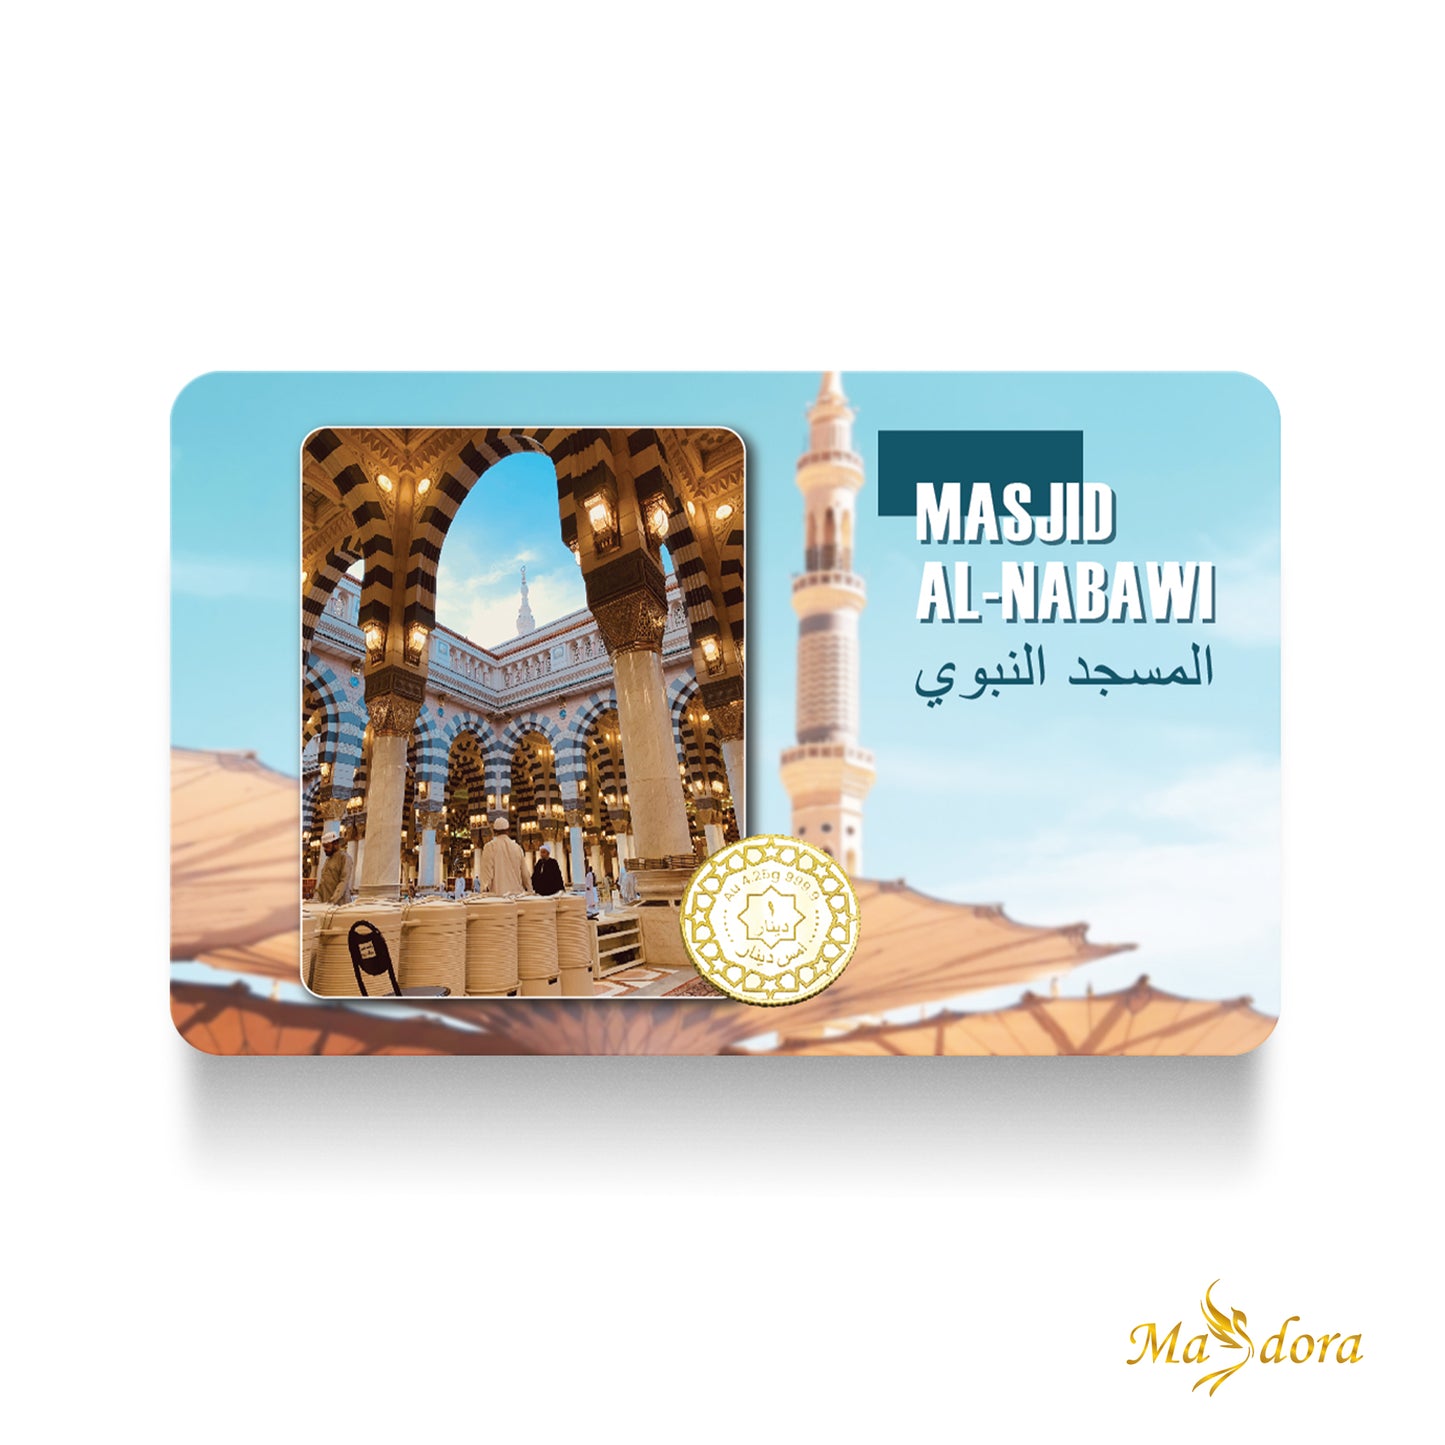 Masdora 999.9 Gold 1 Dinar (4.25gm ) ~ Umrah Collection 2